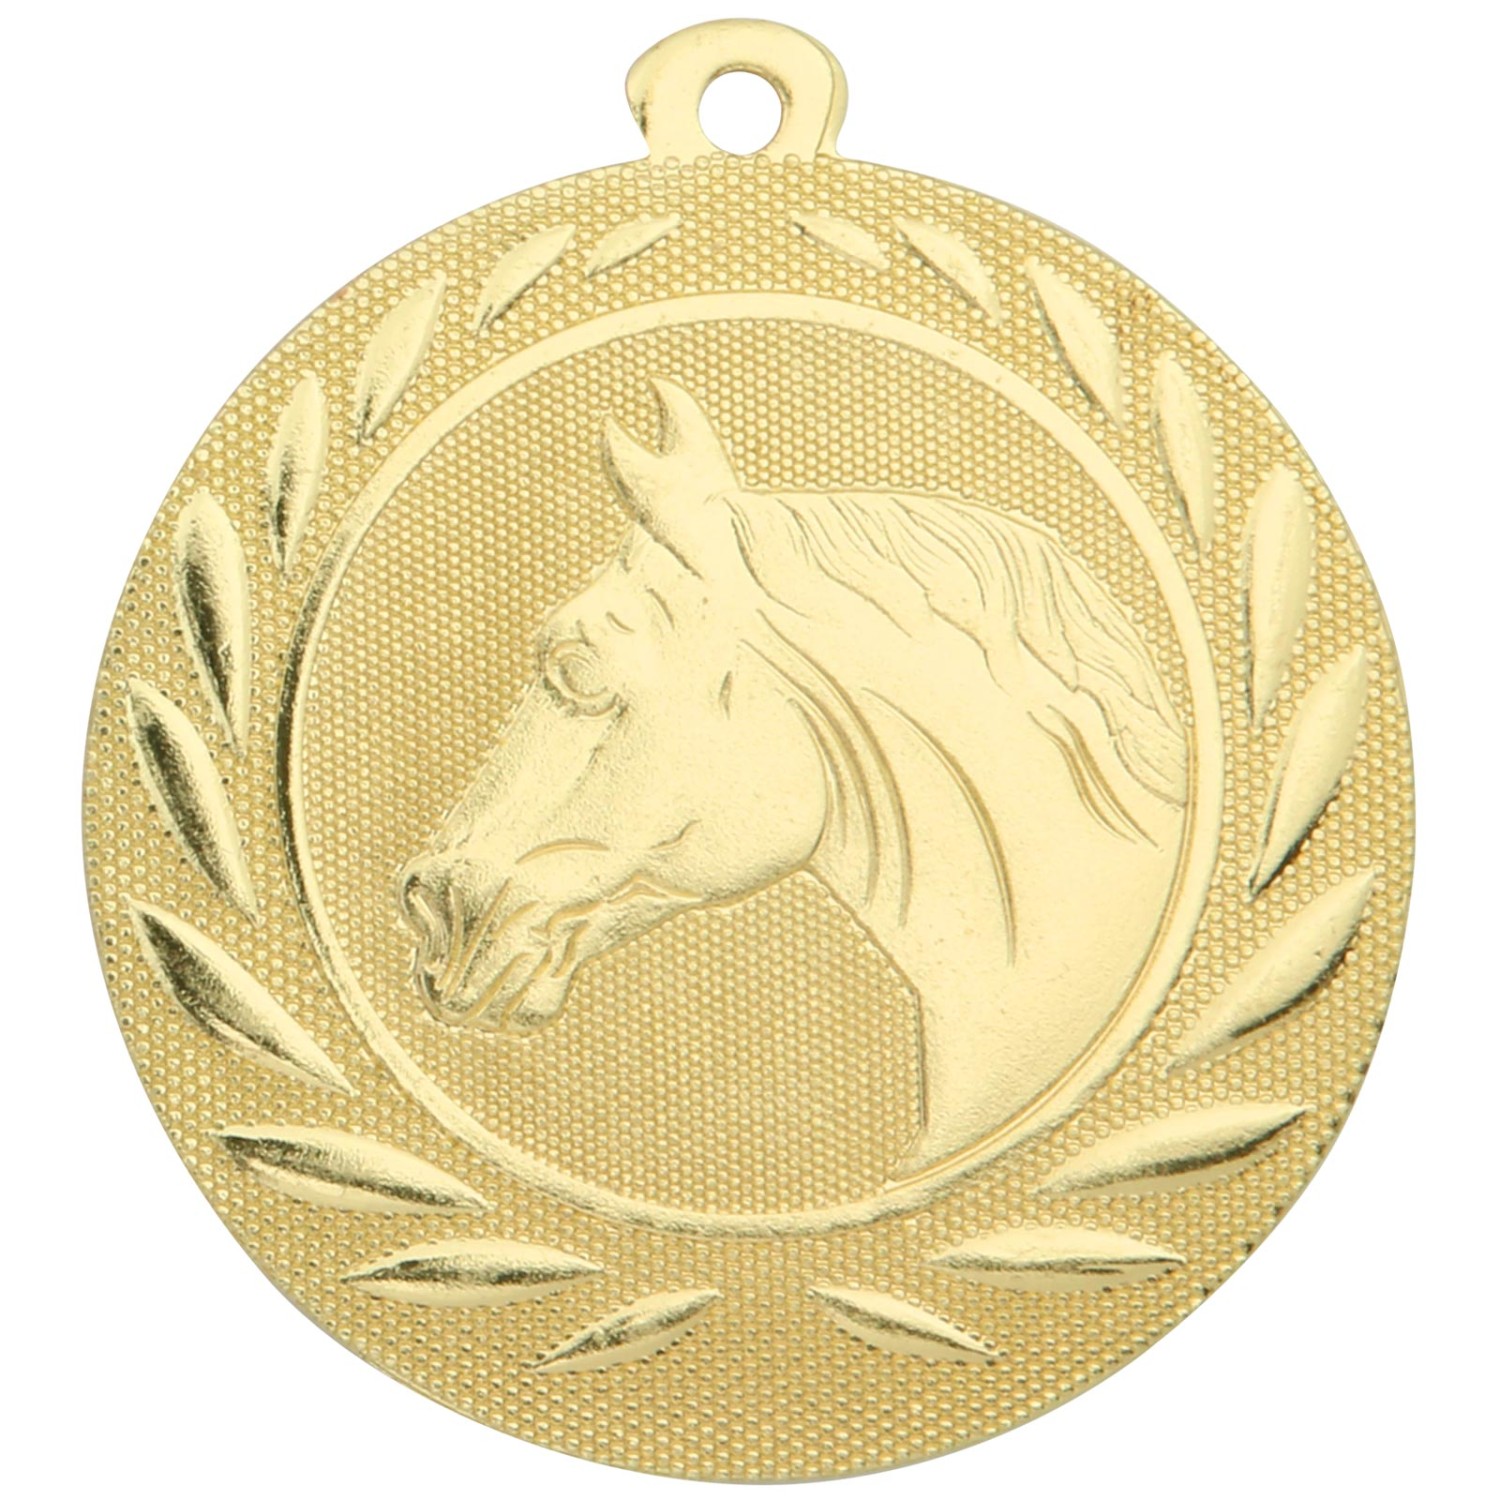 Medaille Pferd Reiten 50mm Pferdesport Metall (Sorte: gold)